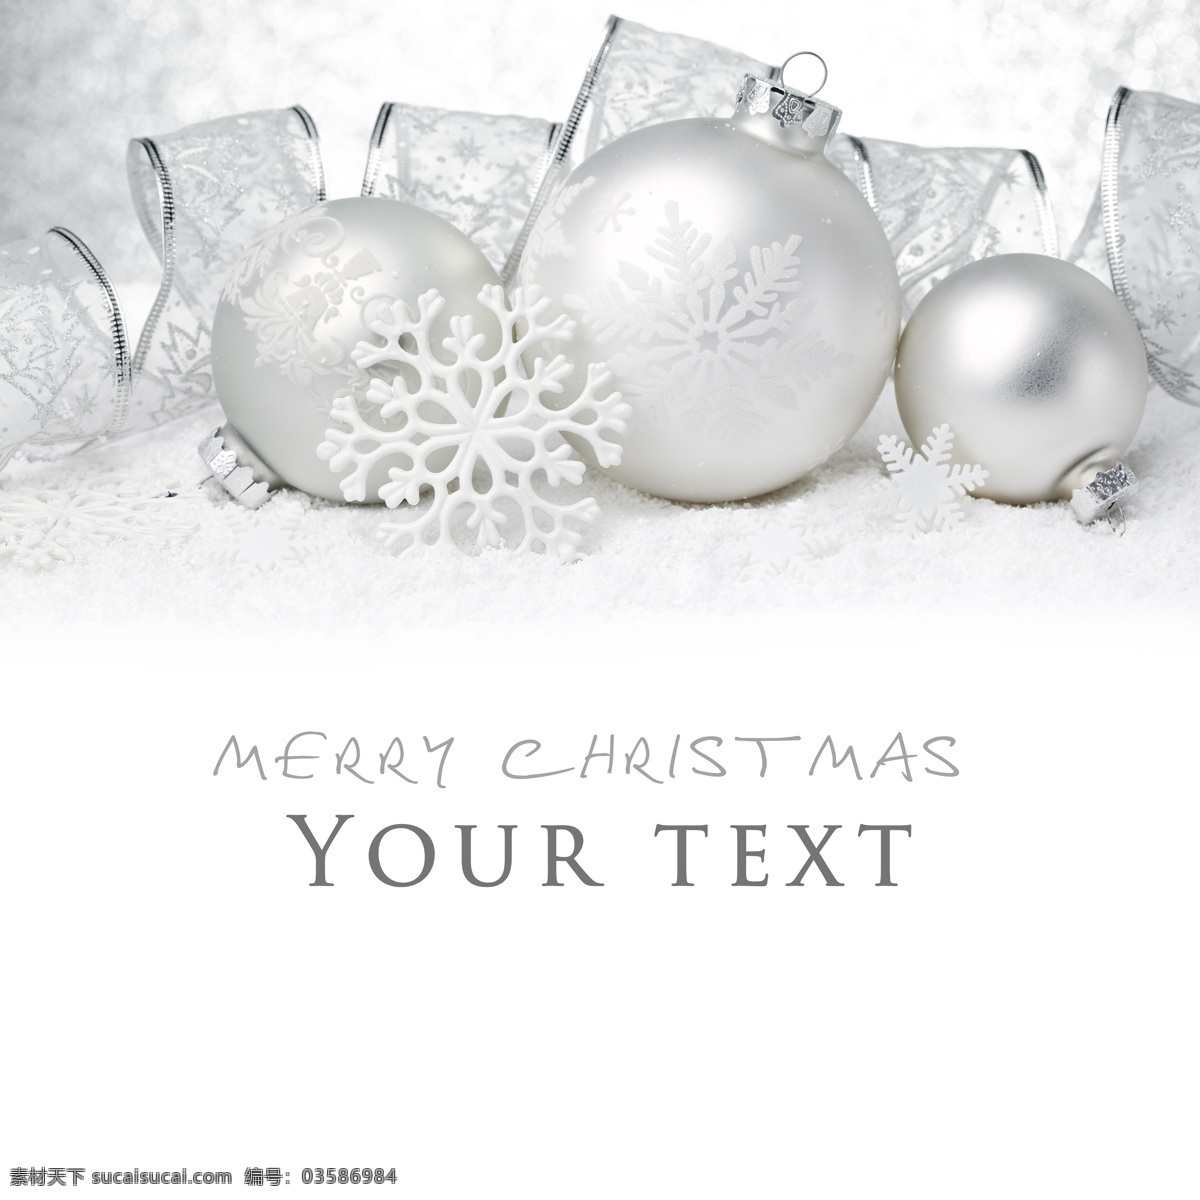 银色 彩带 雪花 彩球 背景 素材图片 银色彩带 圣诞吊球 圣诞装饰品 背景素材 节日庆典 生活百科